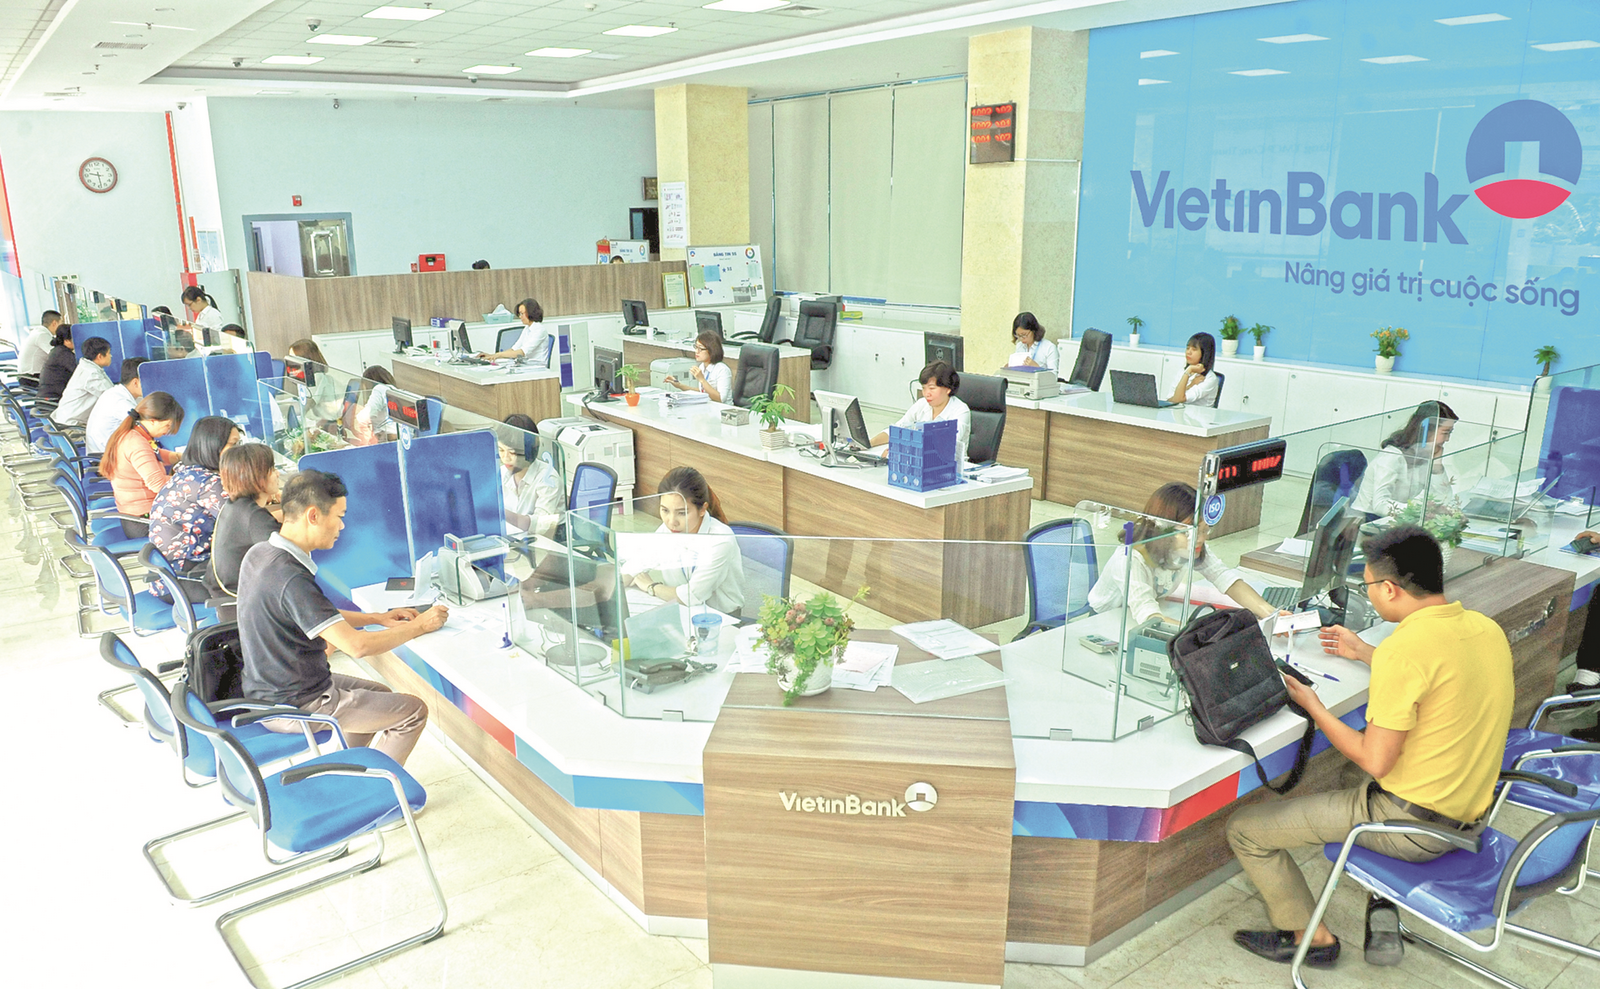 VietinBank: Hòa cùng nhịp phát triển của doanh nghiệp